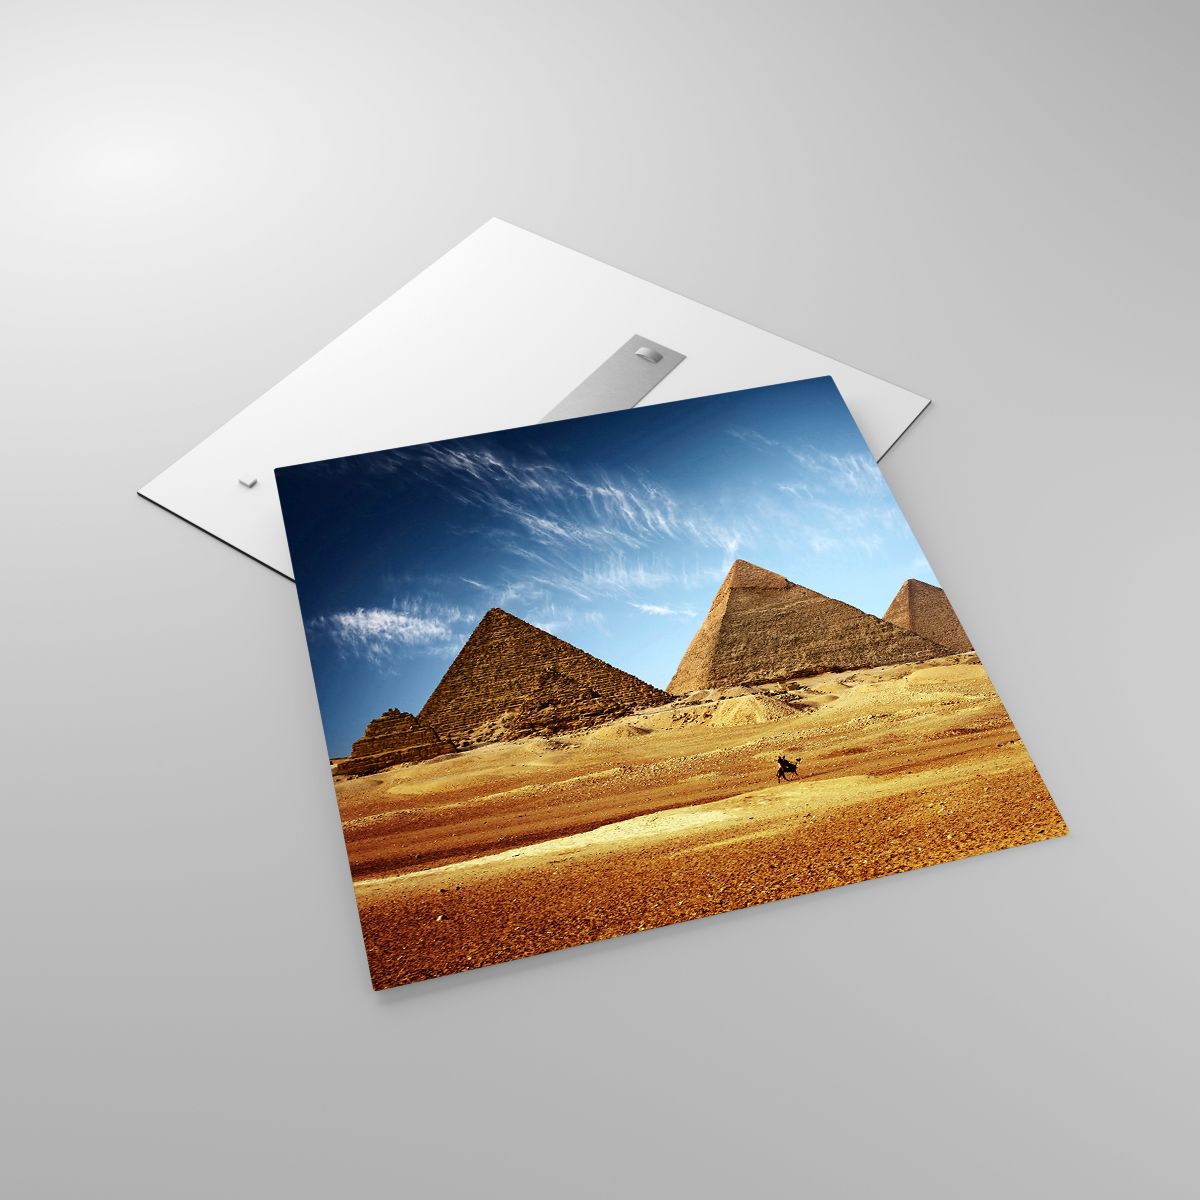 Quadri Piramidi, Quadri Architettura, Quadri Paesaggio, Quadri Egitto, Quadri Deserto